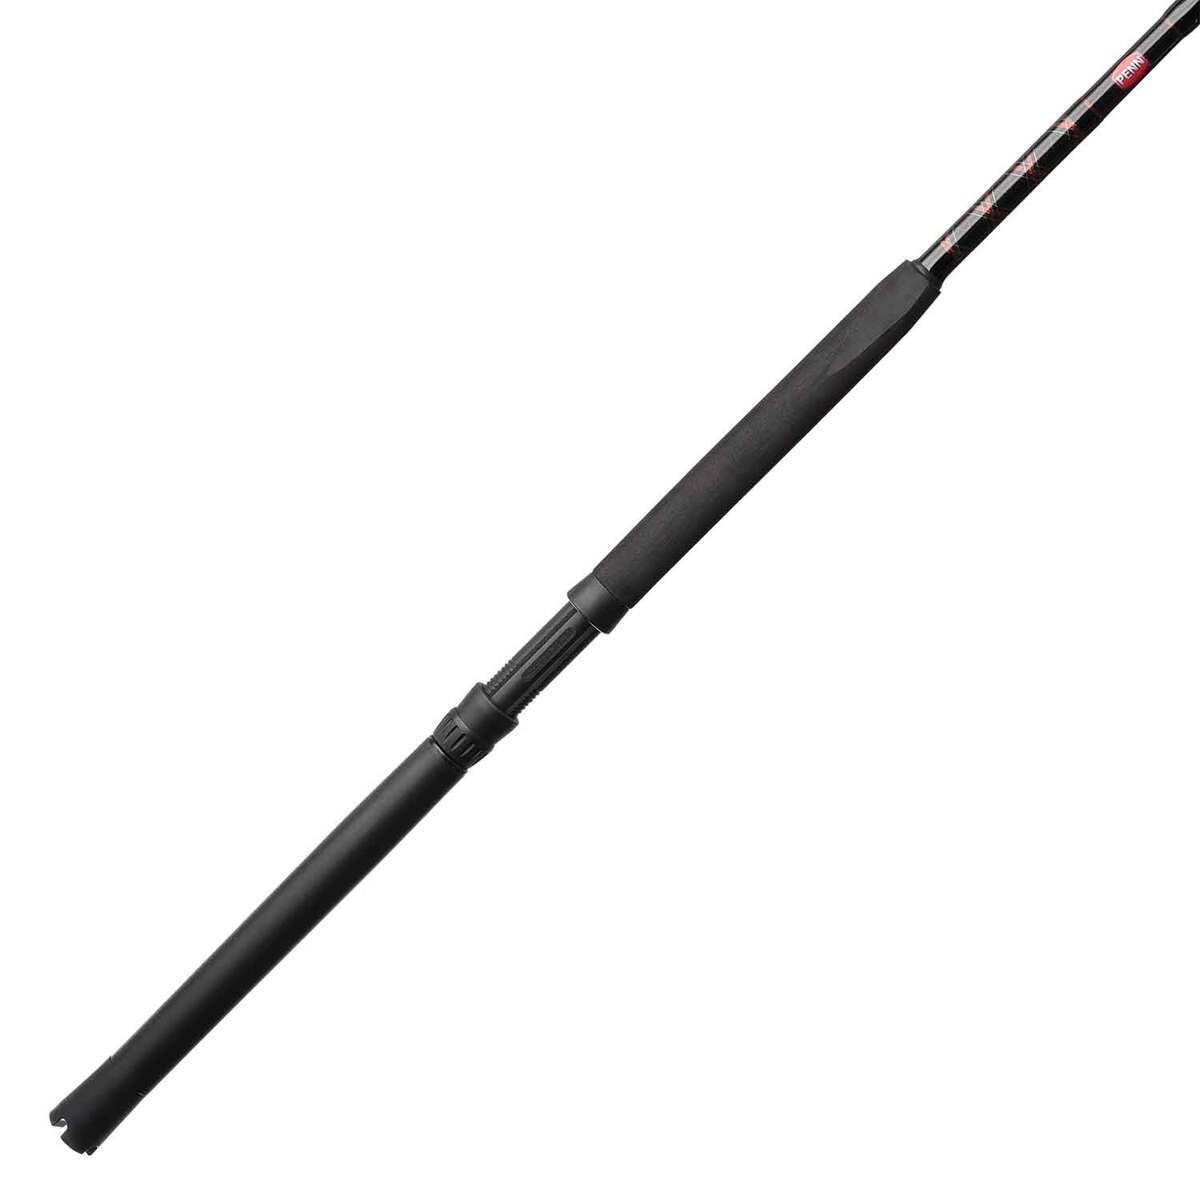 Lew's Speed Stick Walleye Trolling Planer Rod